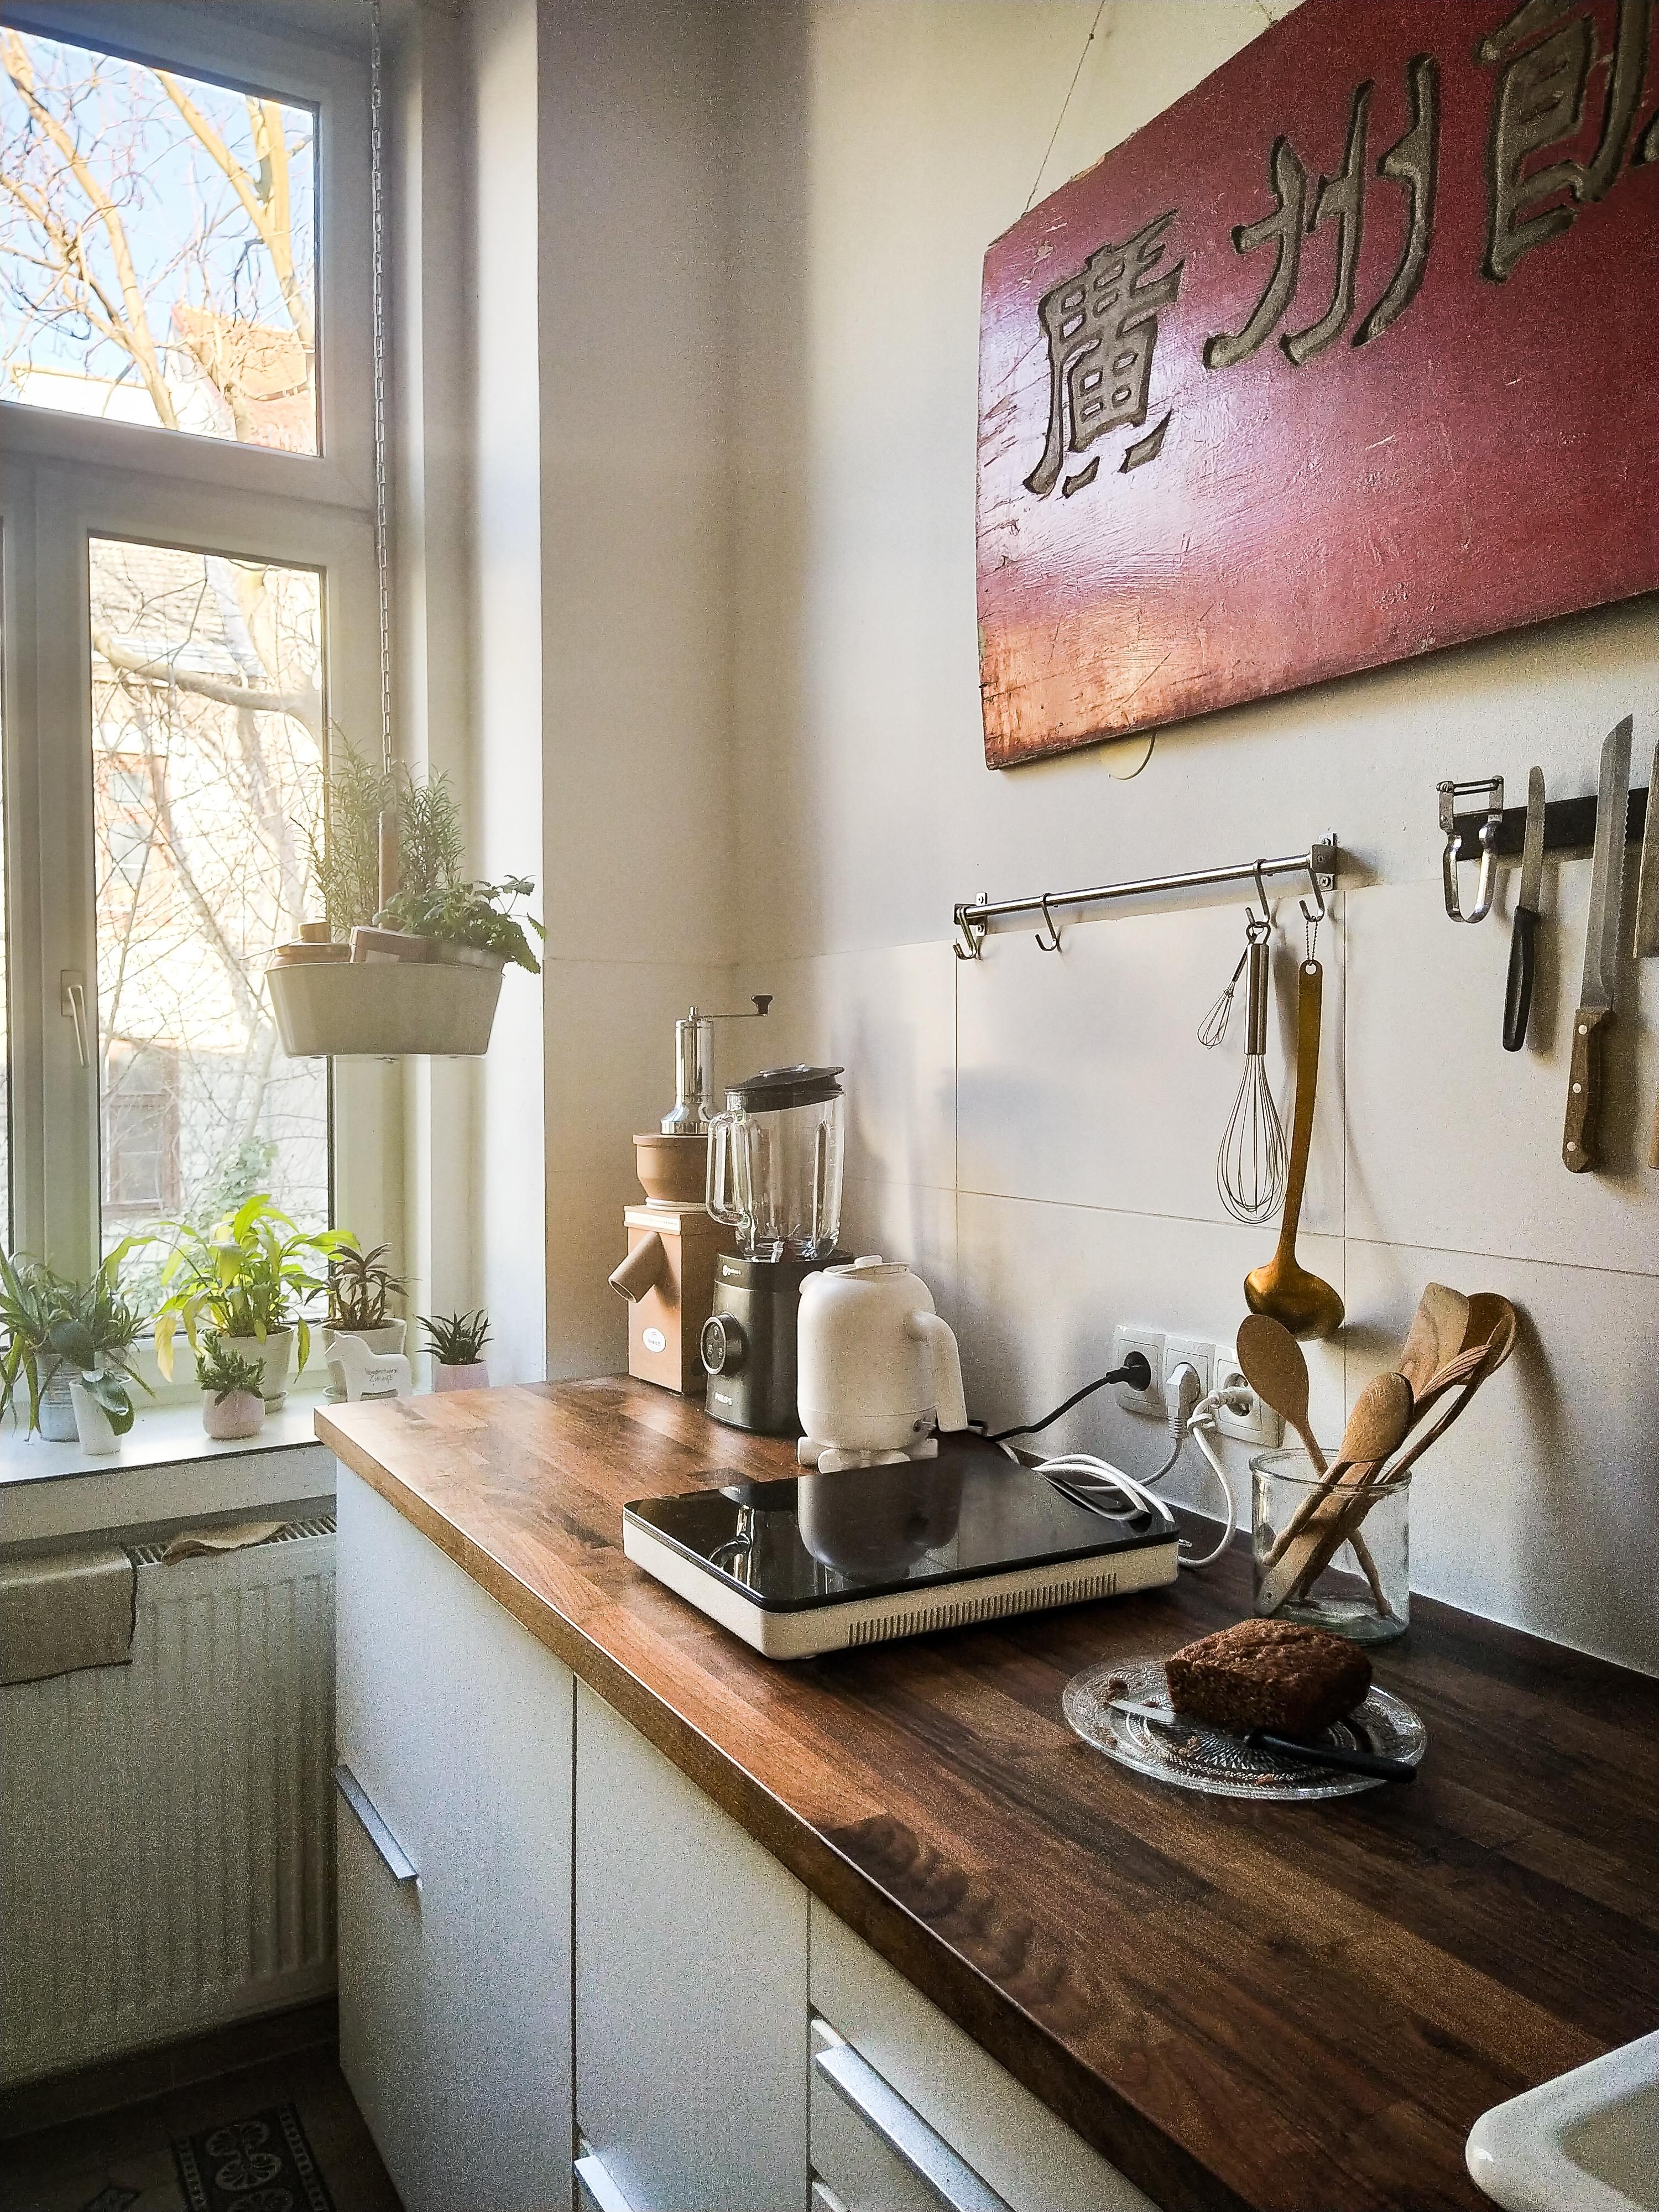 wir lieben es Zuhause zu kochen - in unserer kleinen aber feinen Küche ❤️
#küchenliebe #livingchallenge